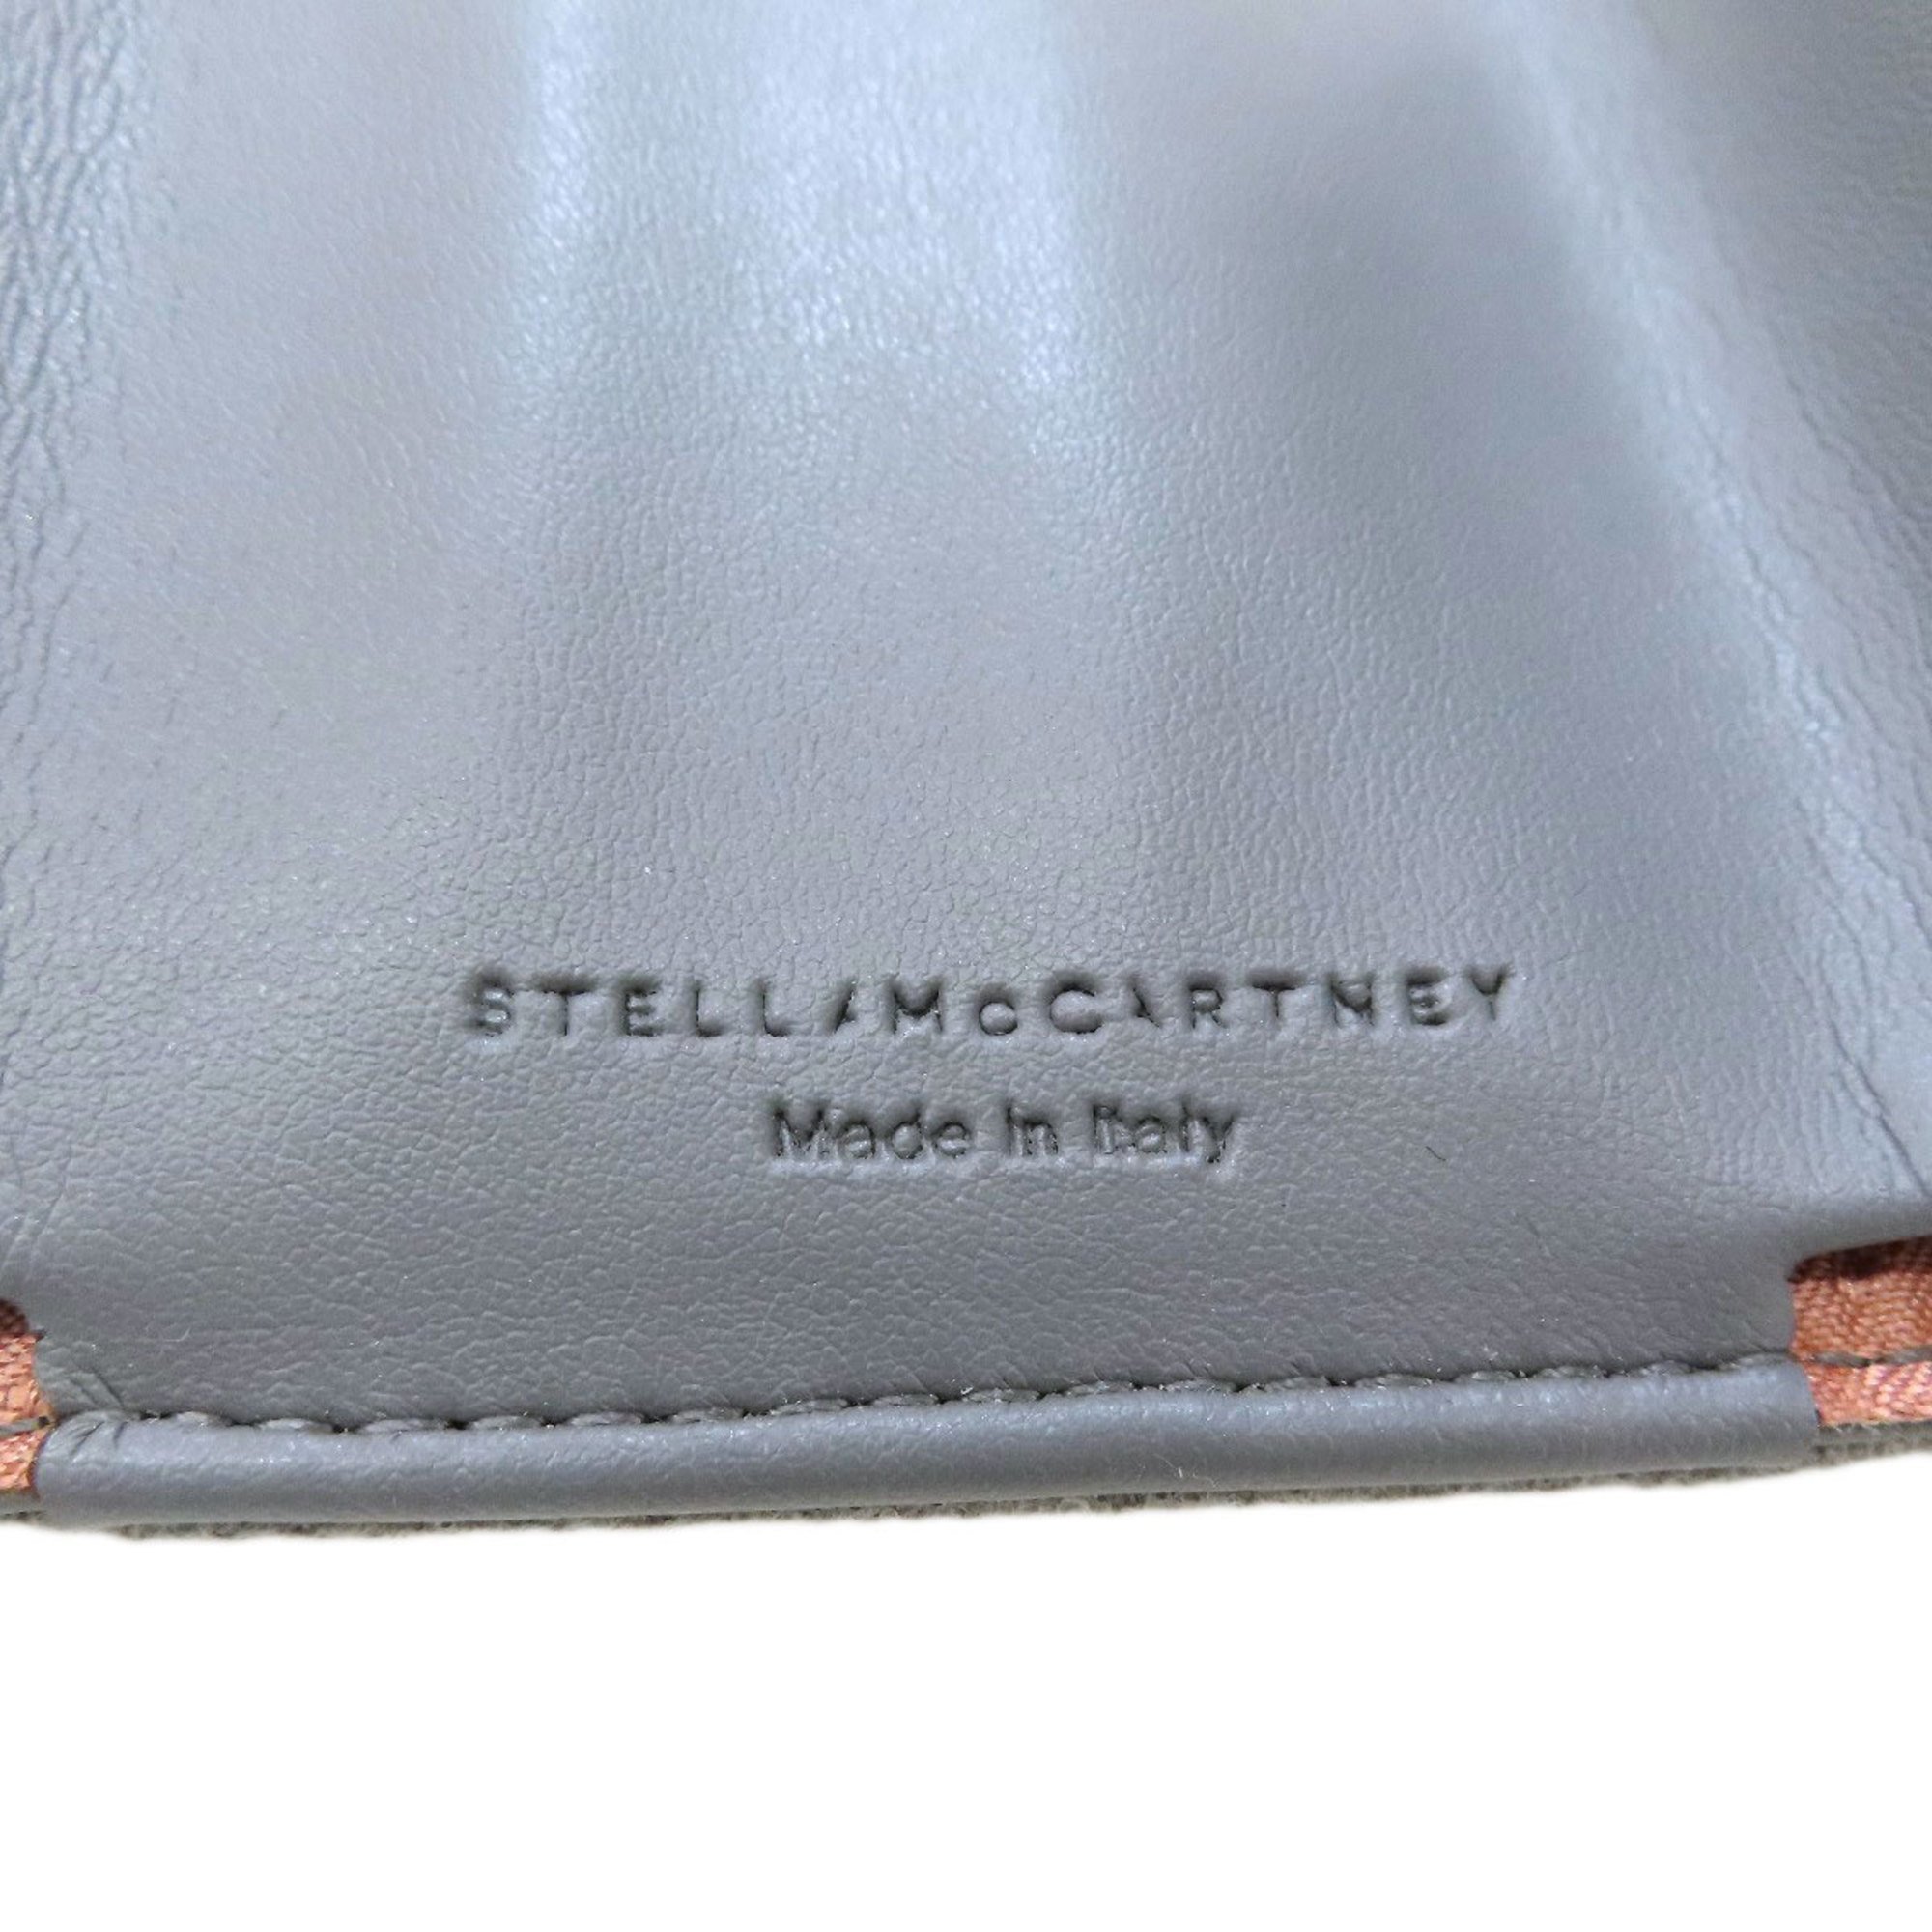 Stella McCartney Falabella Wallet Tri-fold Bi-fold Polyester Women's